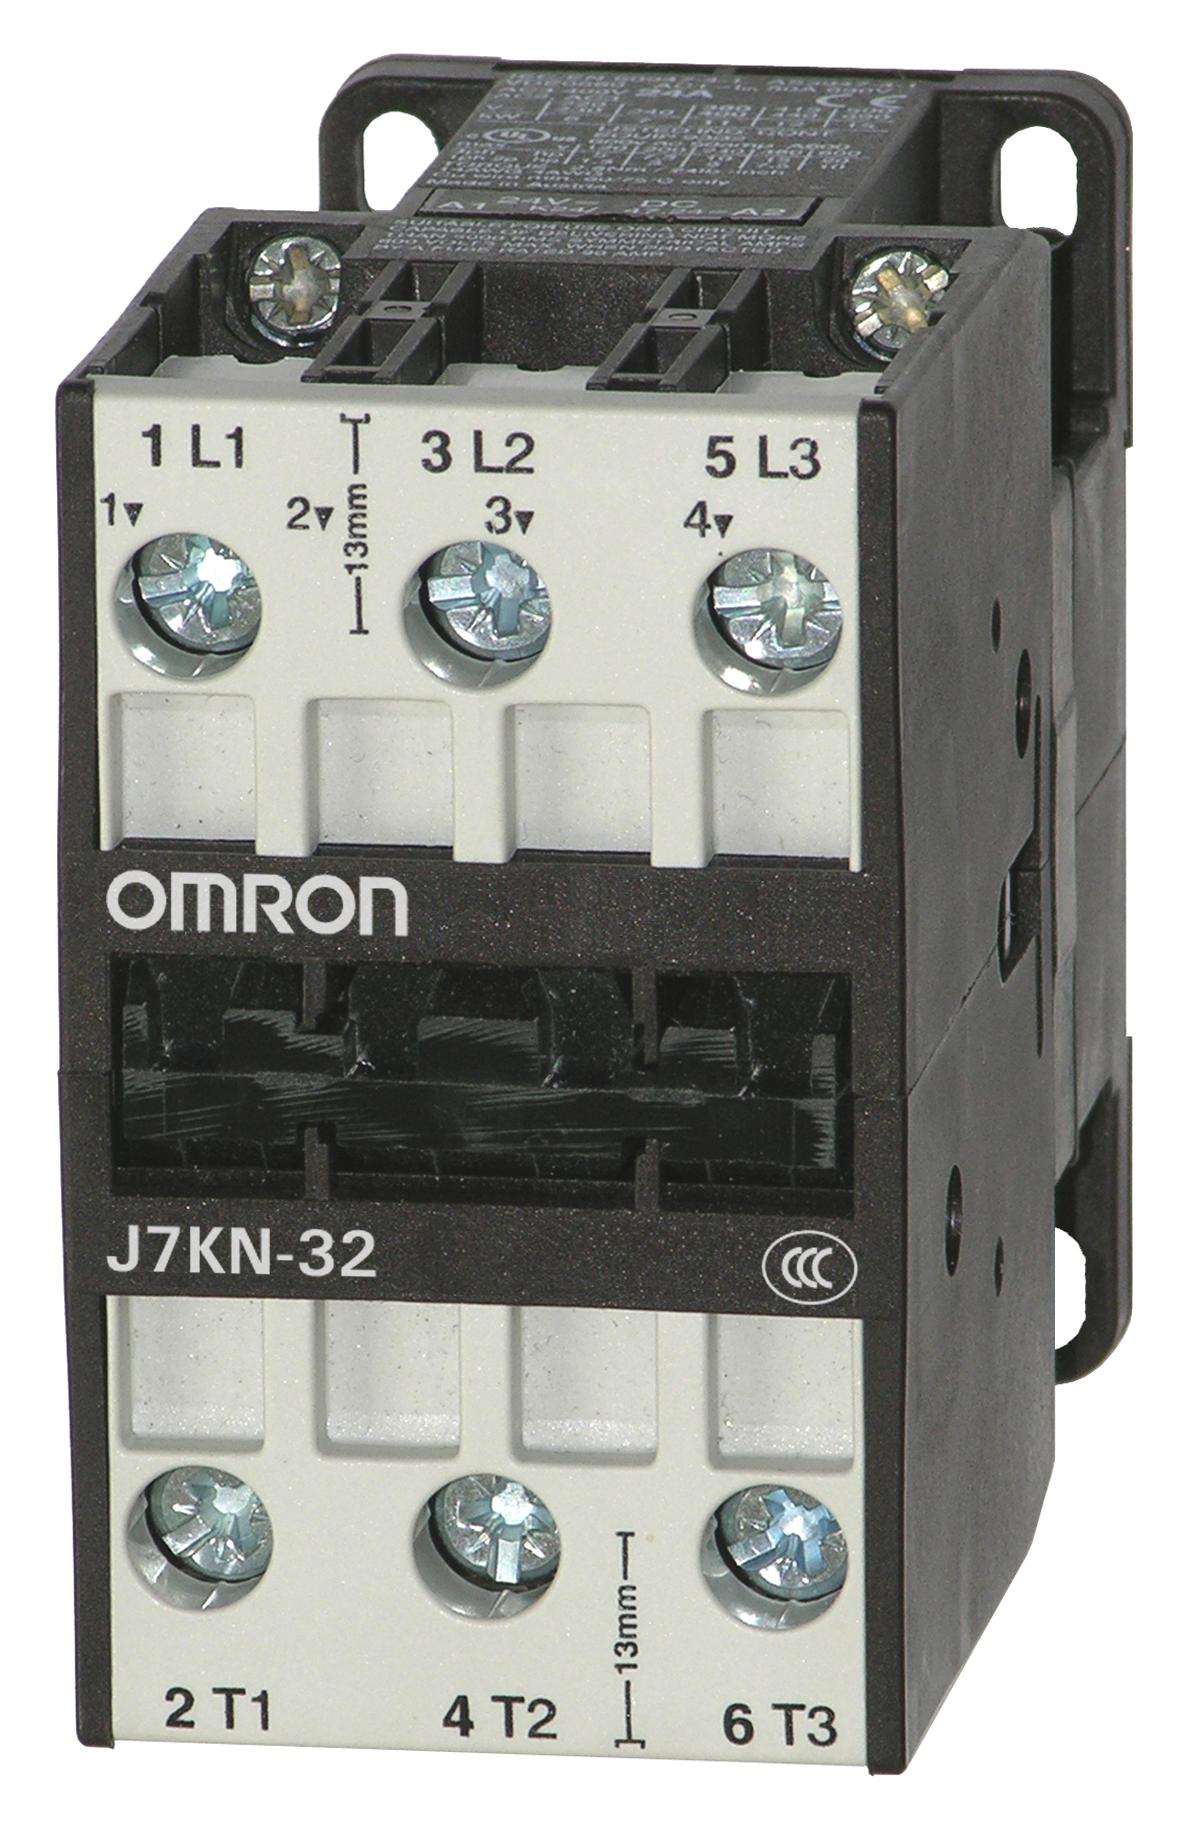 J7KN-32 24 CONTACTORS RELAYS OMRON